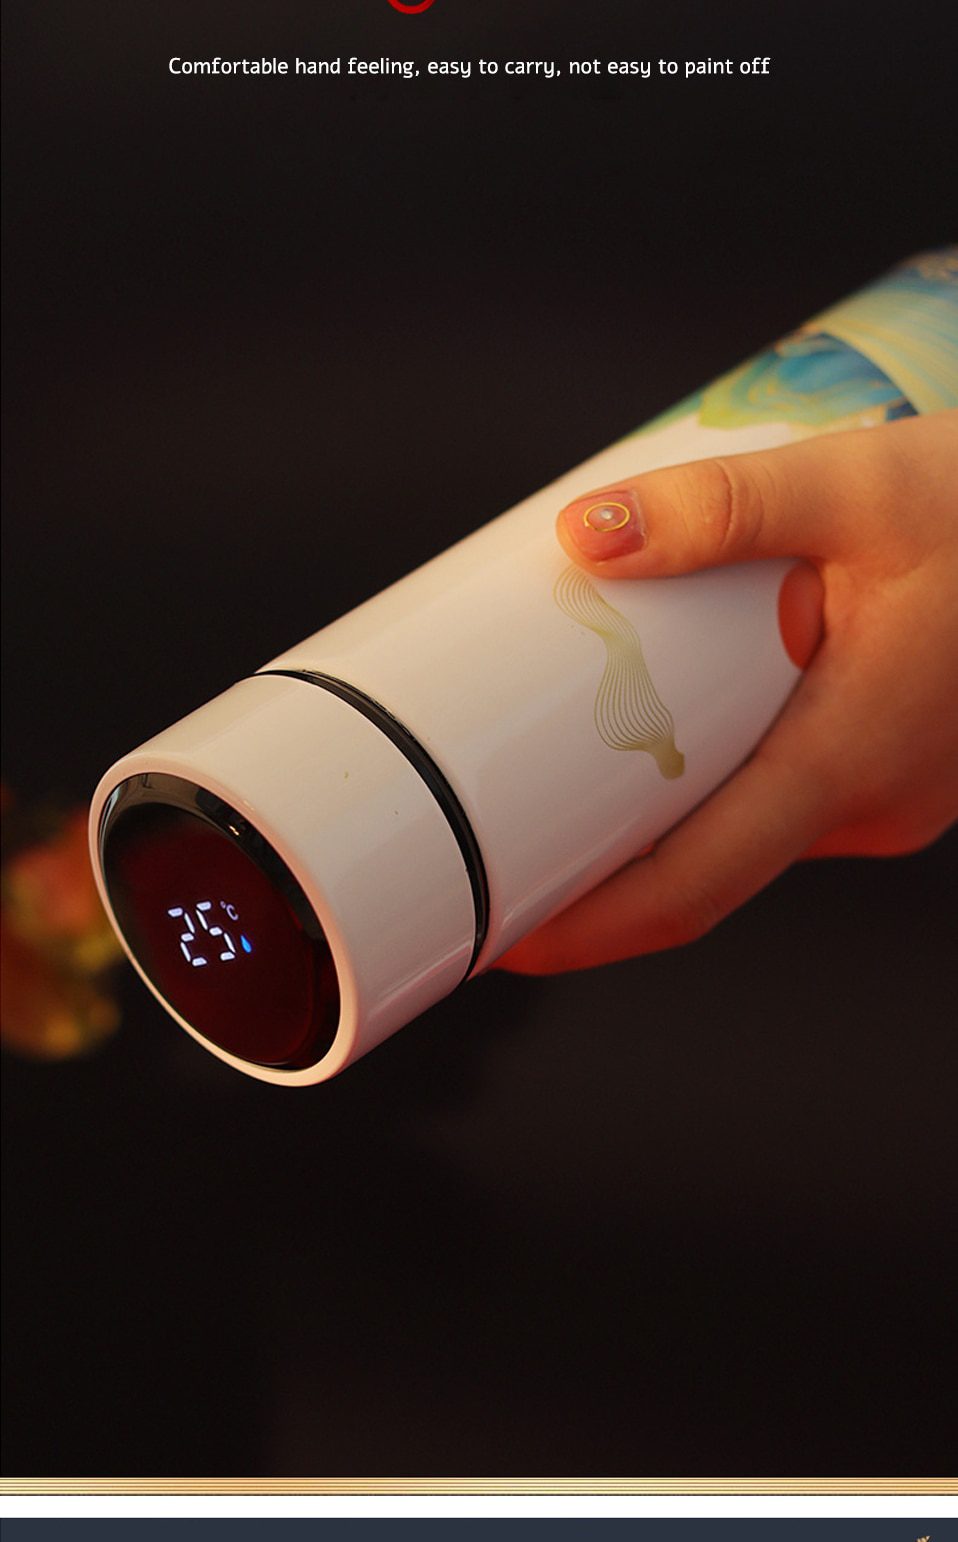 NEW Steel 450ML Creative Style LED Vacuum Flasks Coffee Mug Water Bottle Temperature Display Thermos Tea Milk Mug